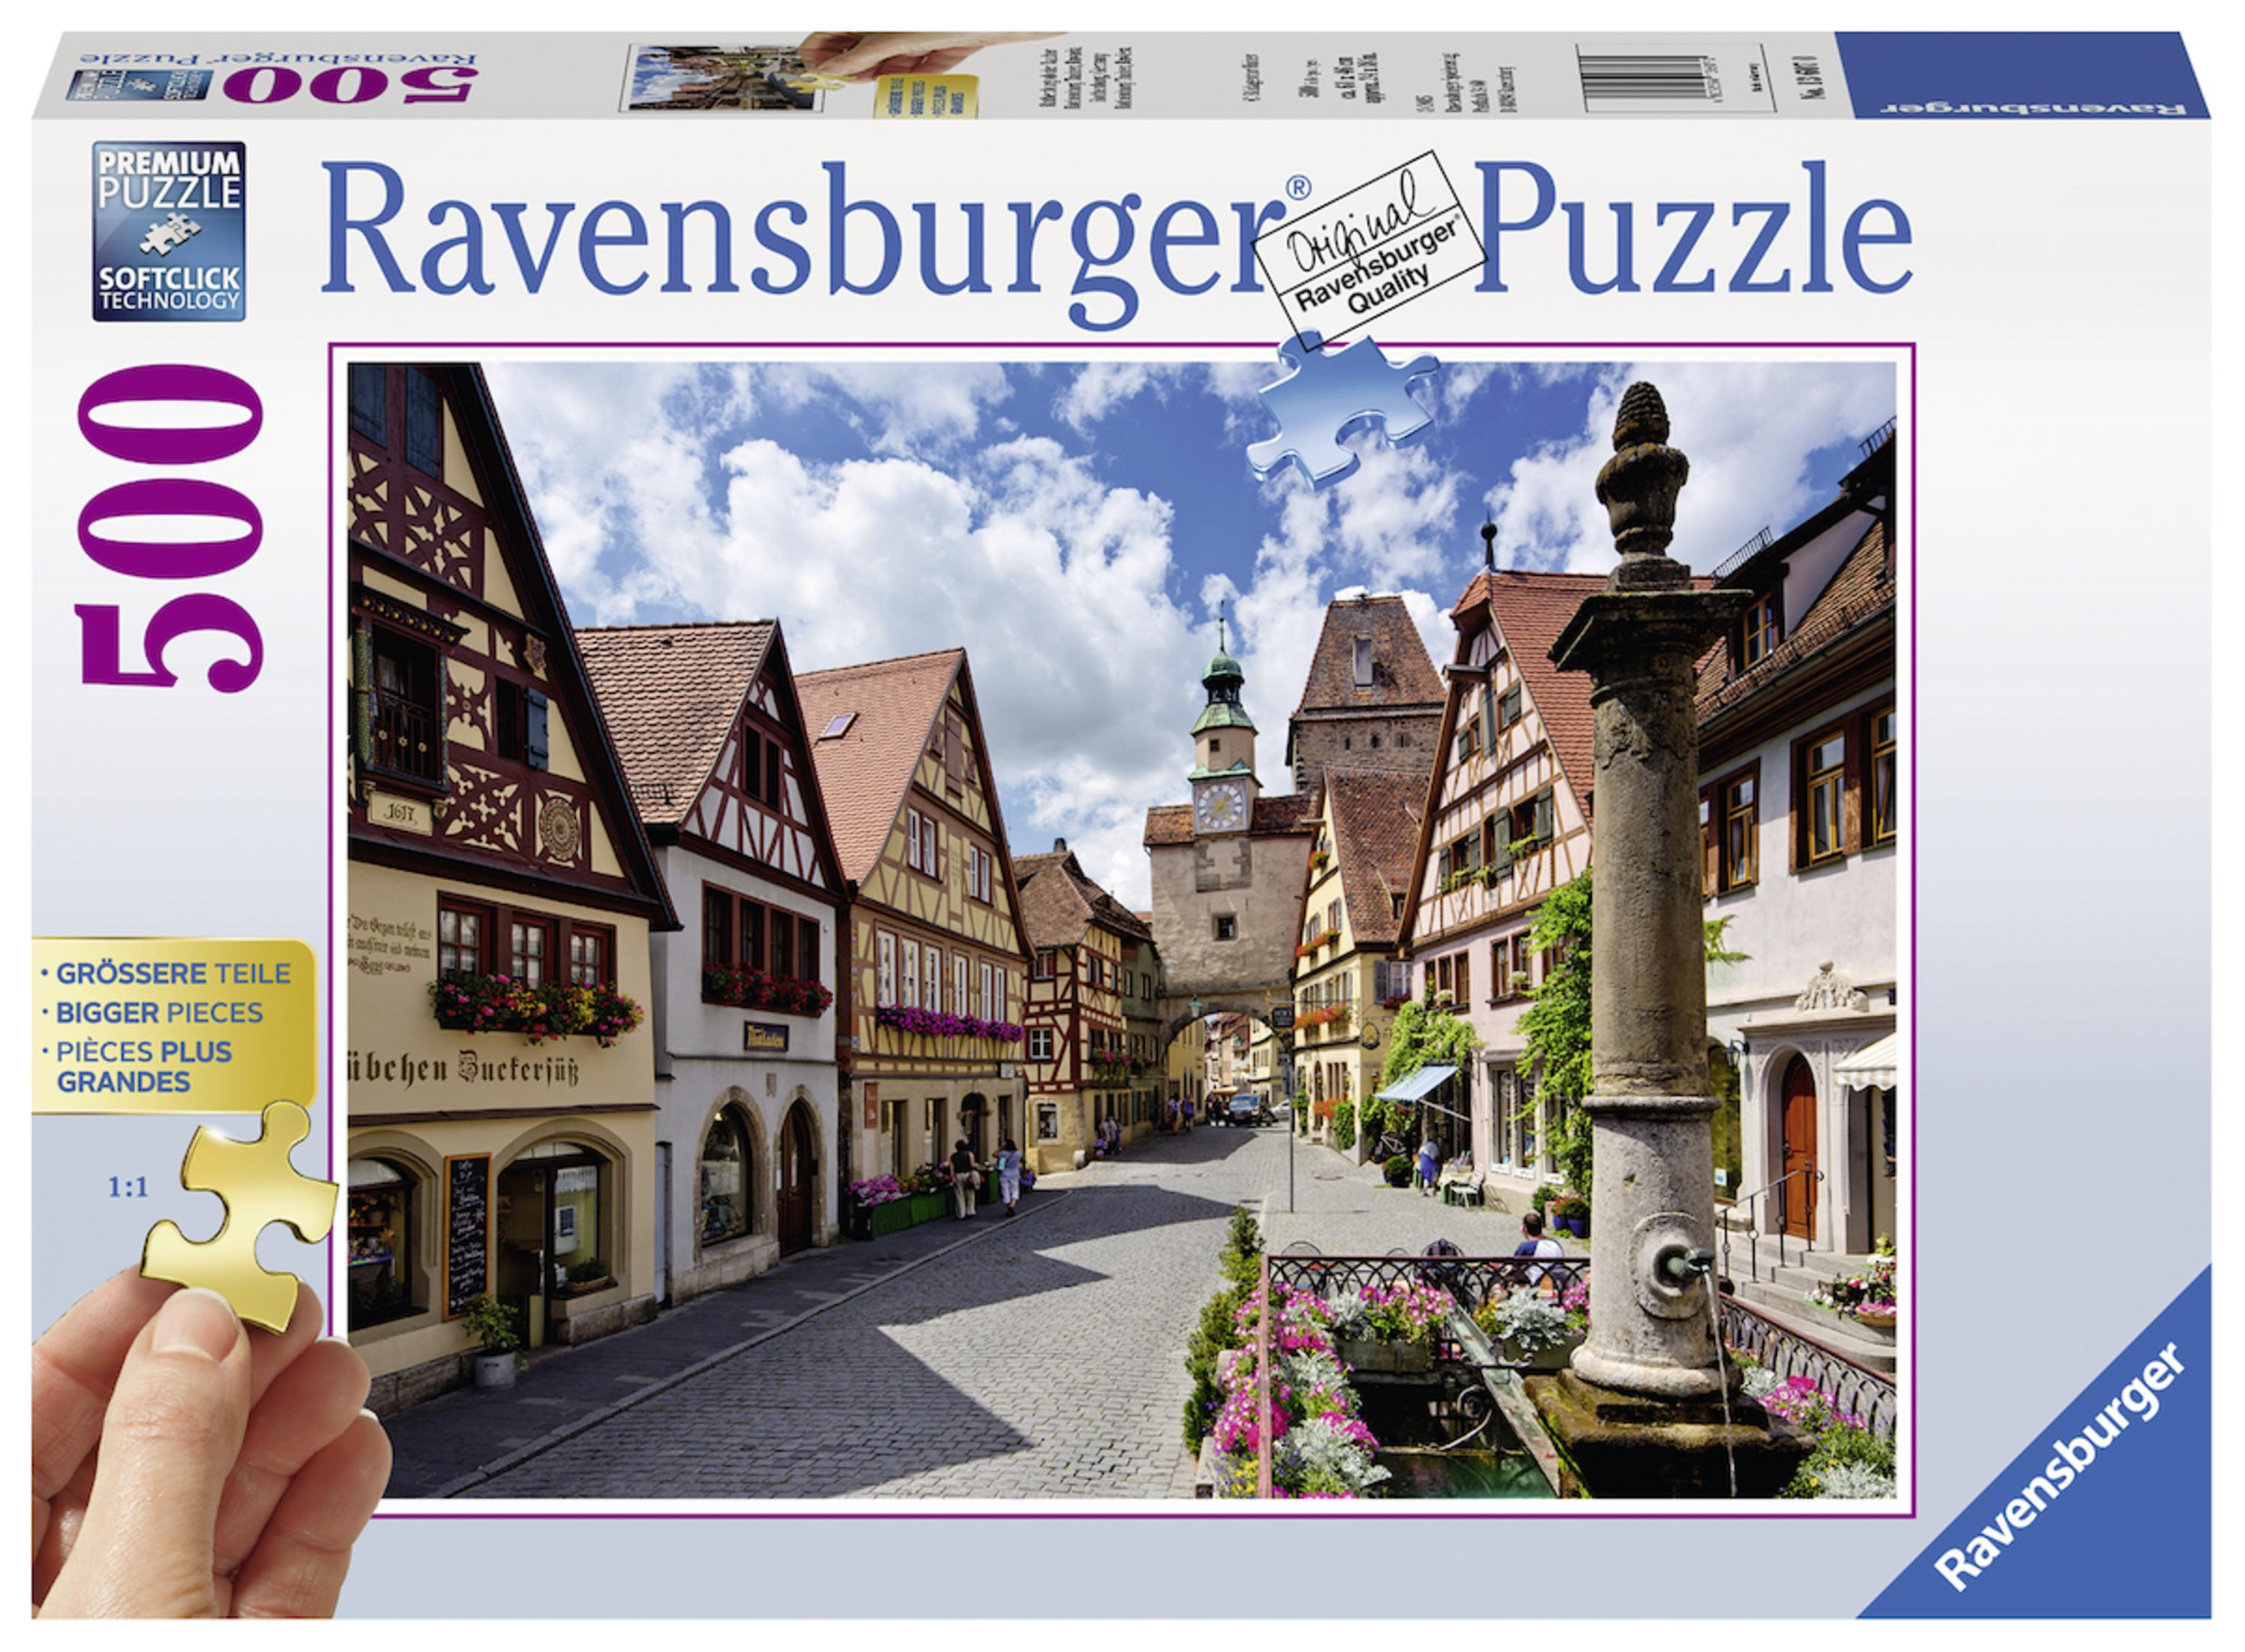 Puzzle 13607 OB ROTHENBURG TAUBER RAVENSBURGER DER